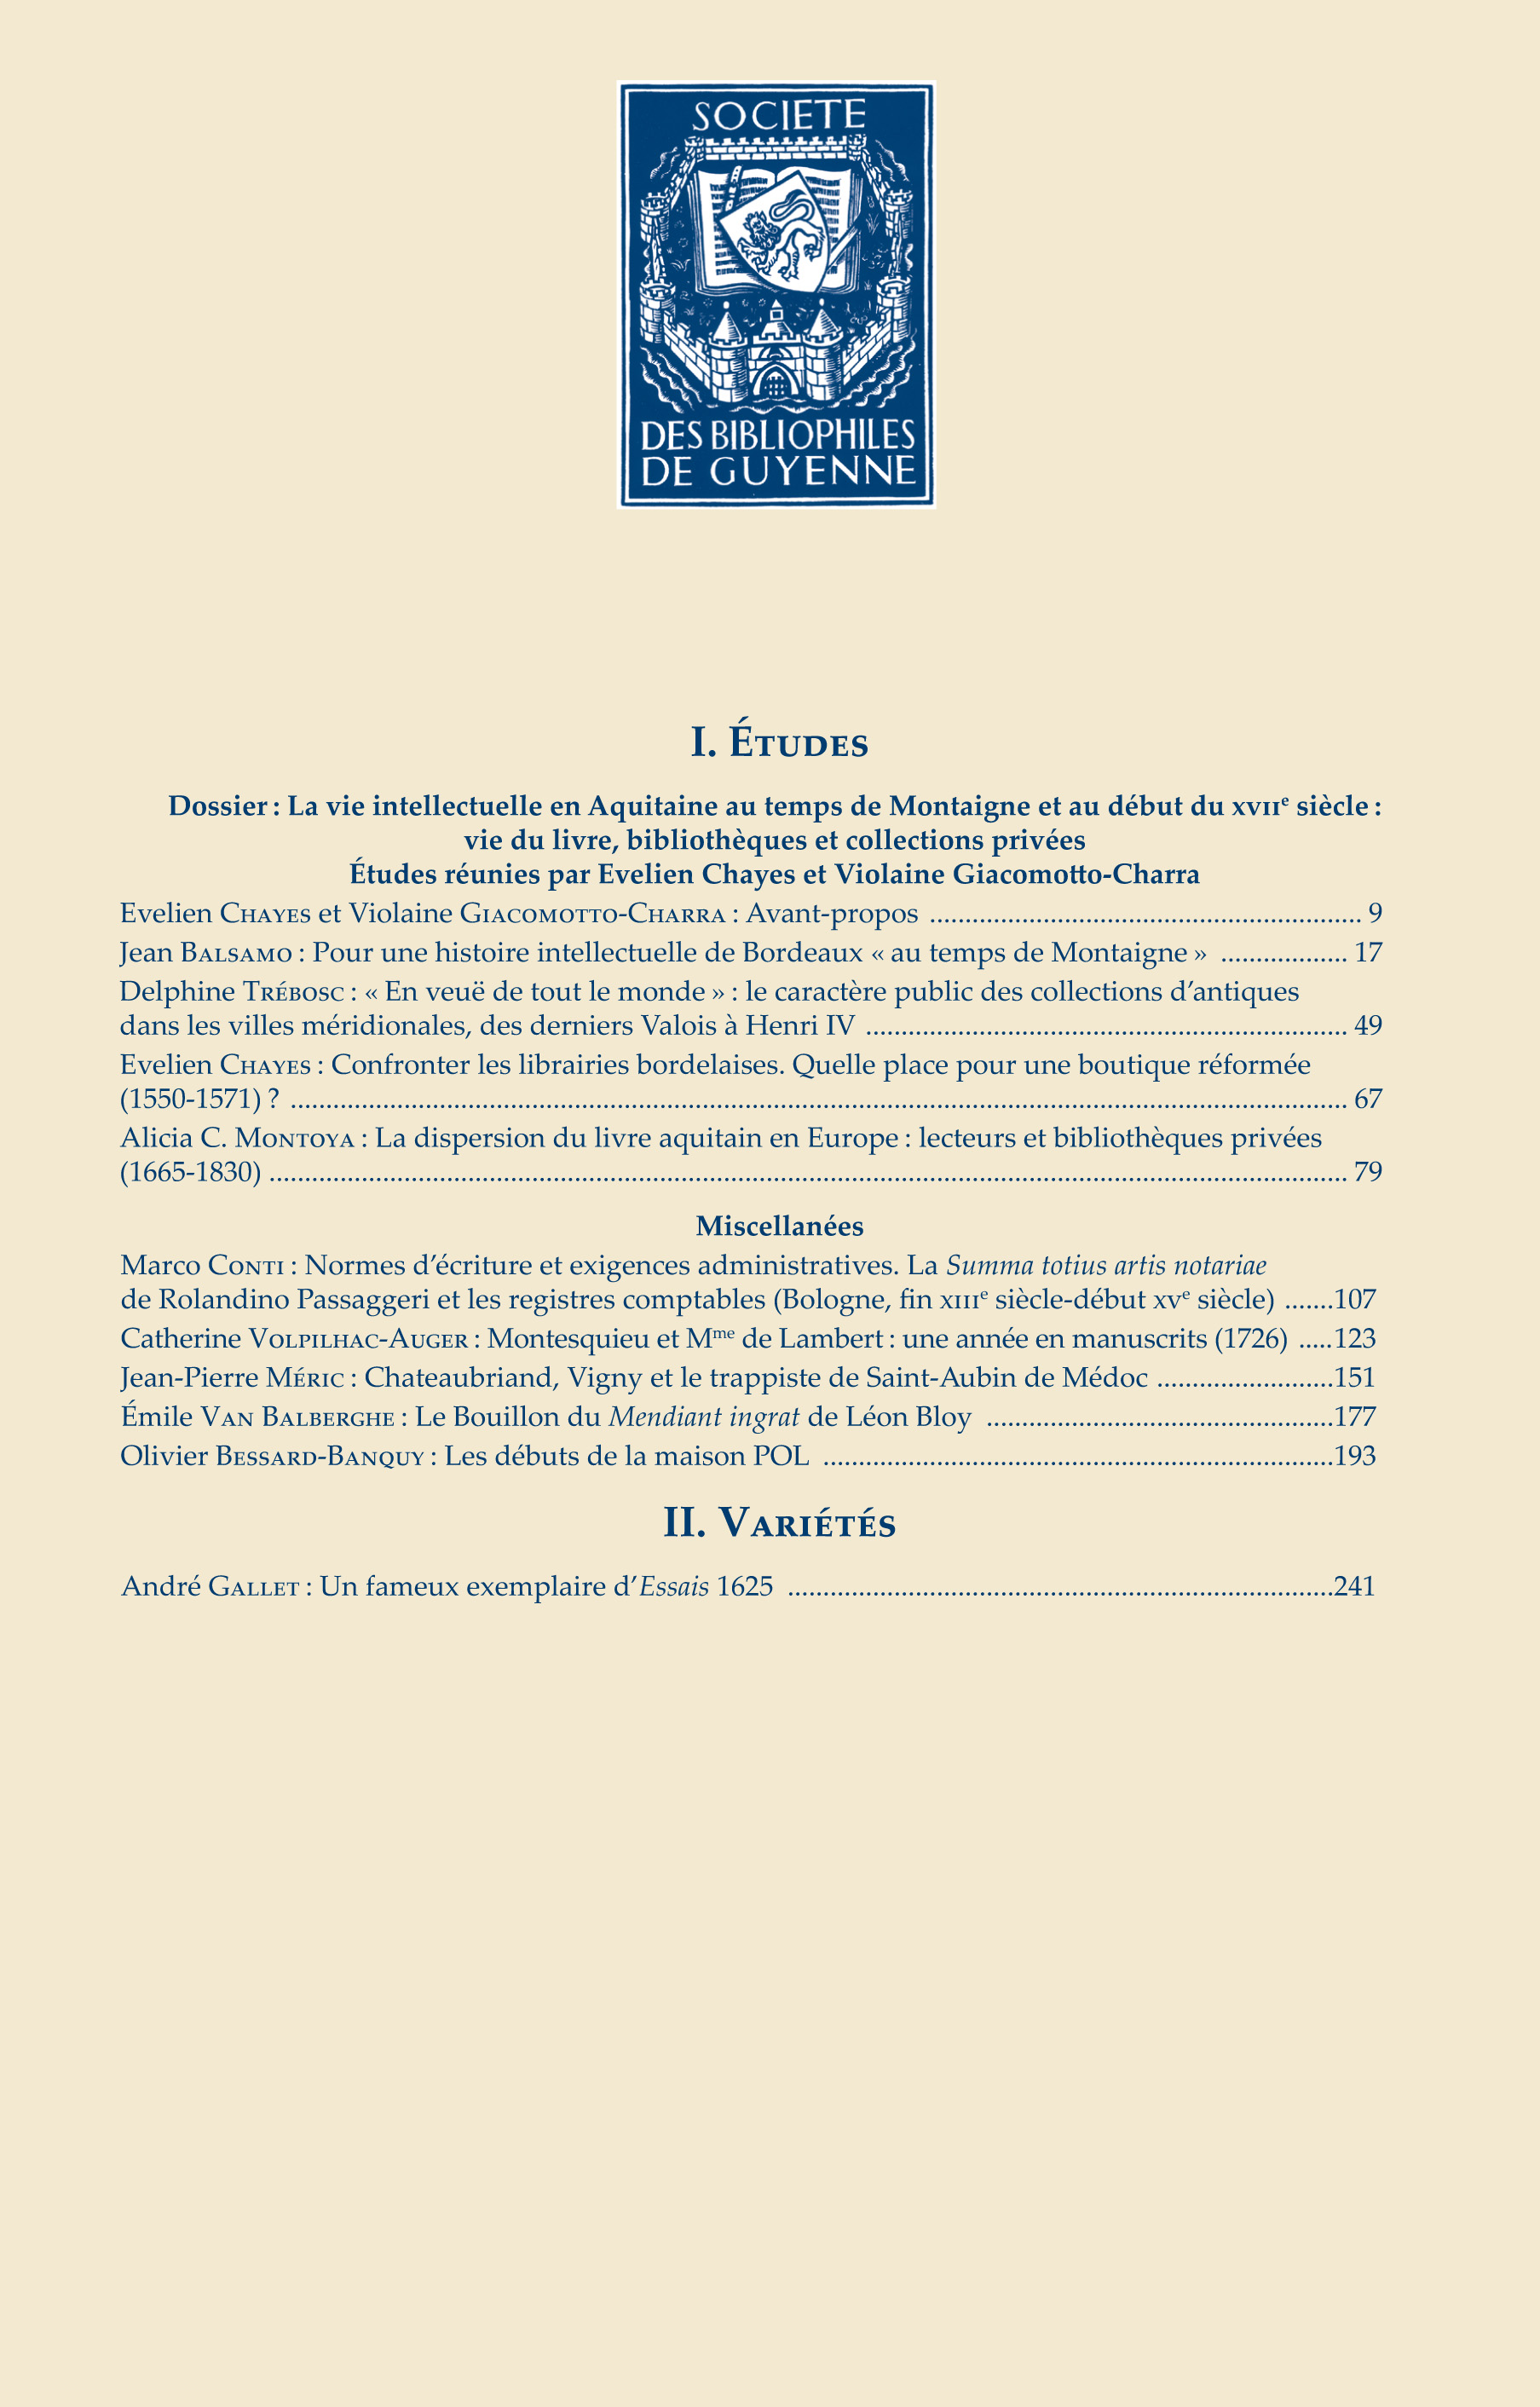 					View Vol. 142 (2020): La vie intellectuelle en Aquitaine au temps de Montaigne et au début du XVIIe siècle: vie du livre, bibliothèques et collections privées
				